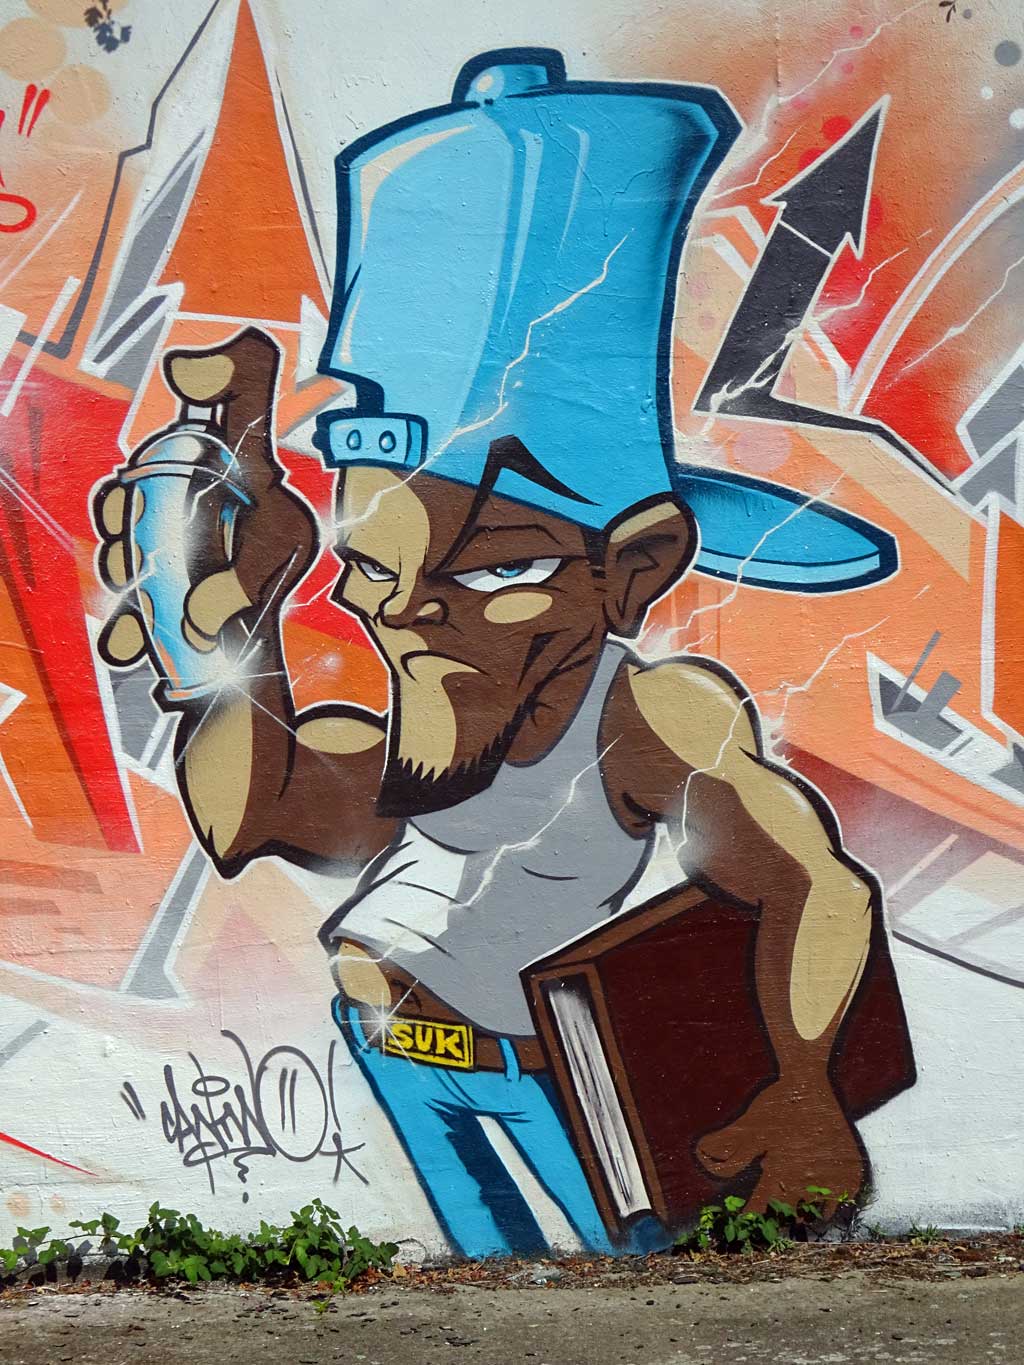 Graffiti von DATER, SPK und CANTWO beim Meeting of Styles 2018